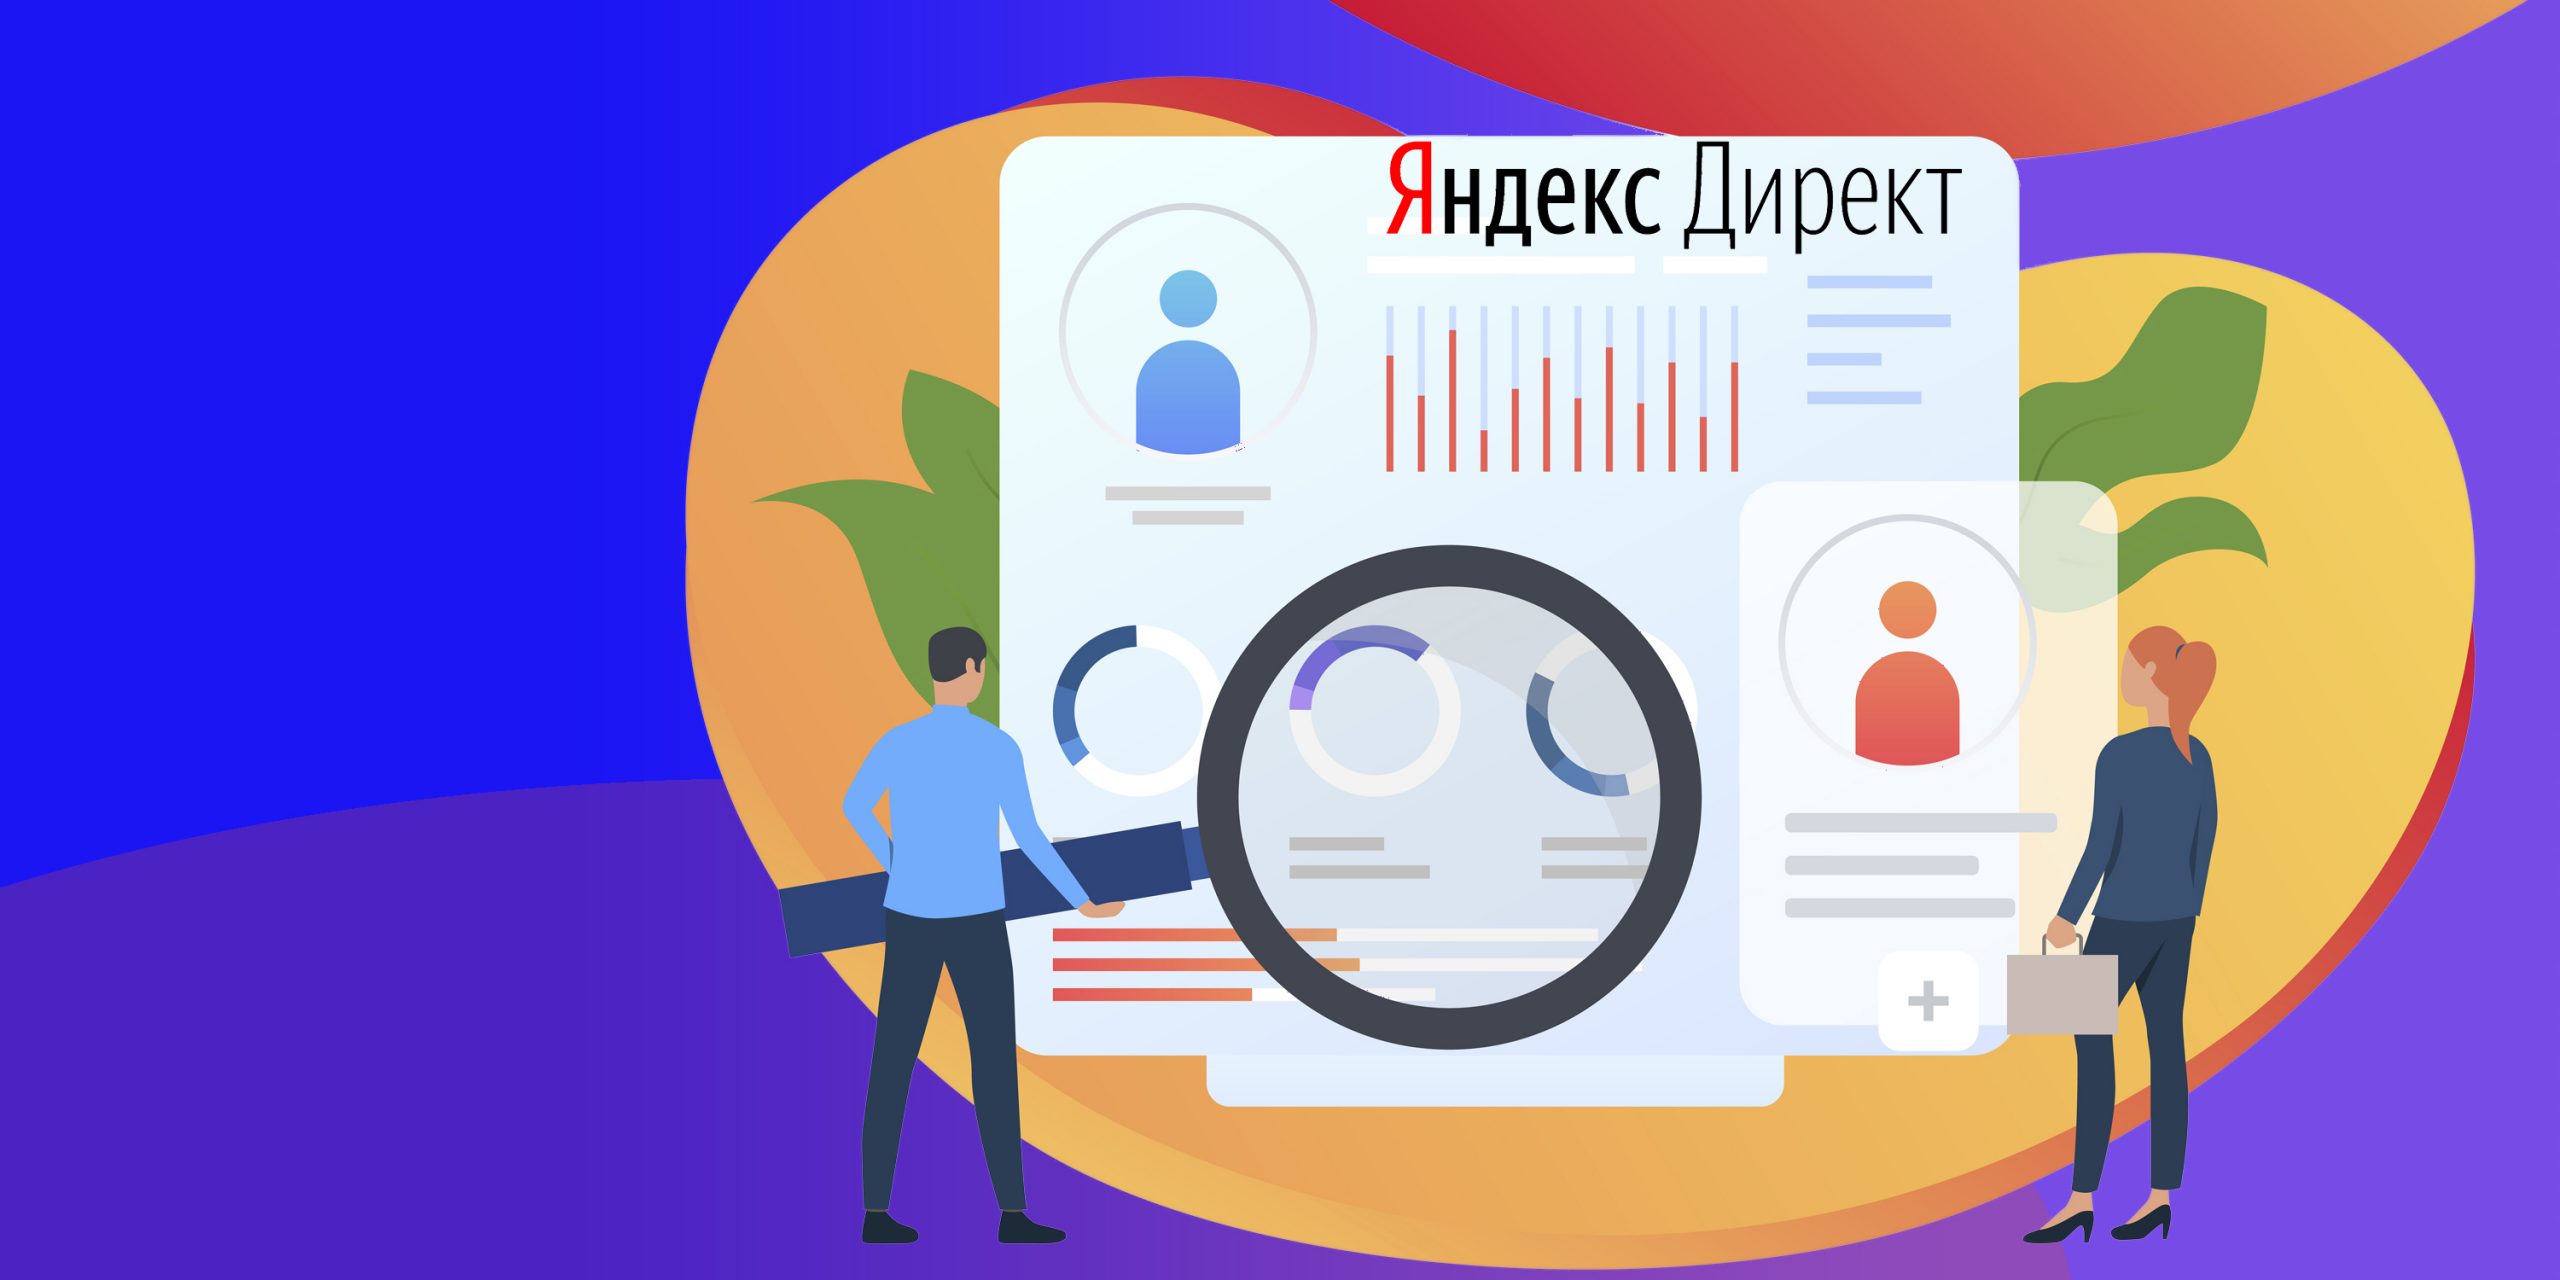 {:en}15 Genius Yandex.Direct Ad Hacks to Build Best Marketing Campaign{:}{:ru}ТОП-15 лайфхаков для настройки эффективной рекламной кампании в Яндекс.Директ{:} И целого мира мало scaled